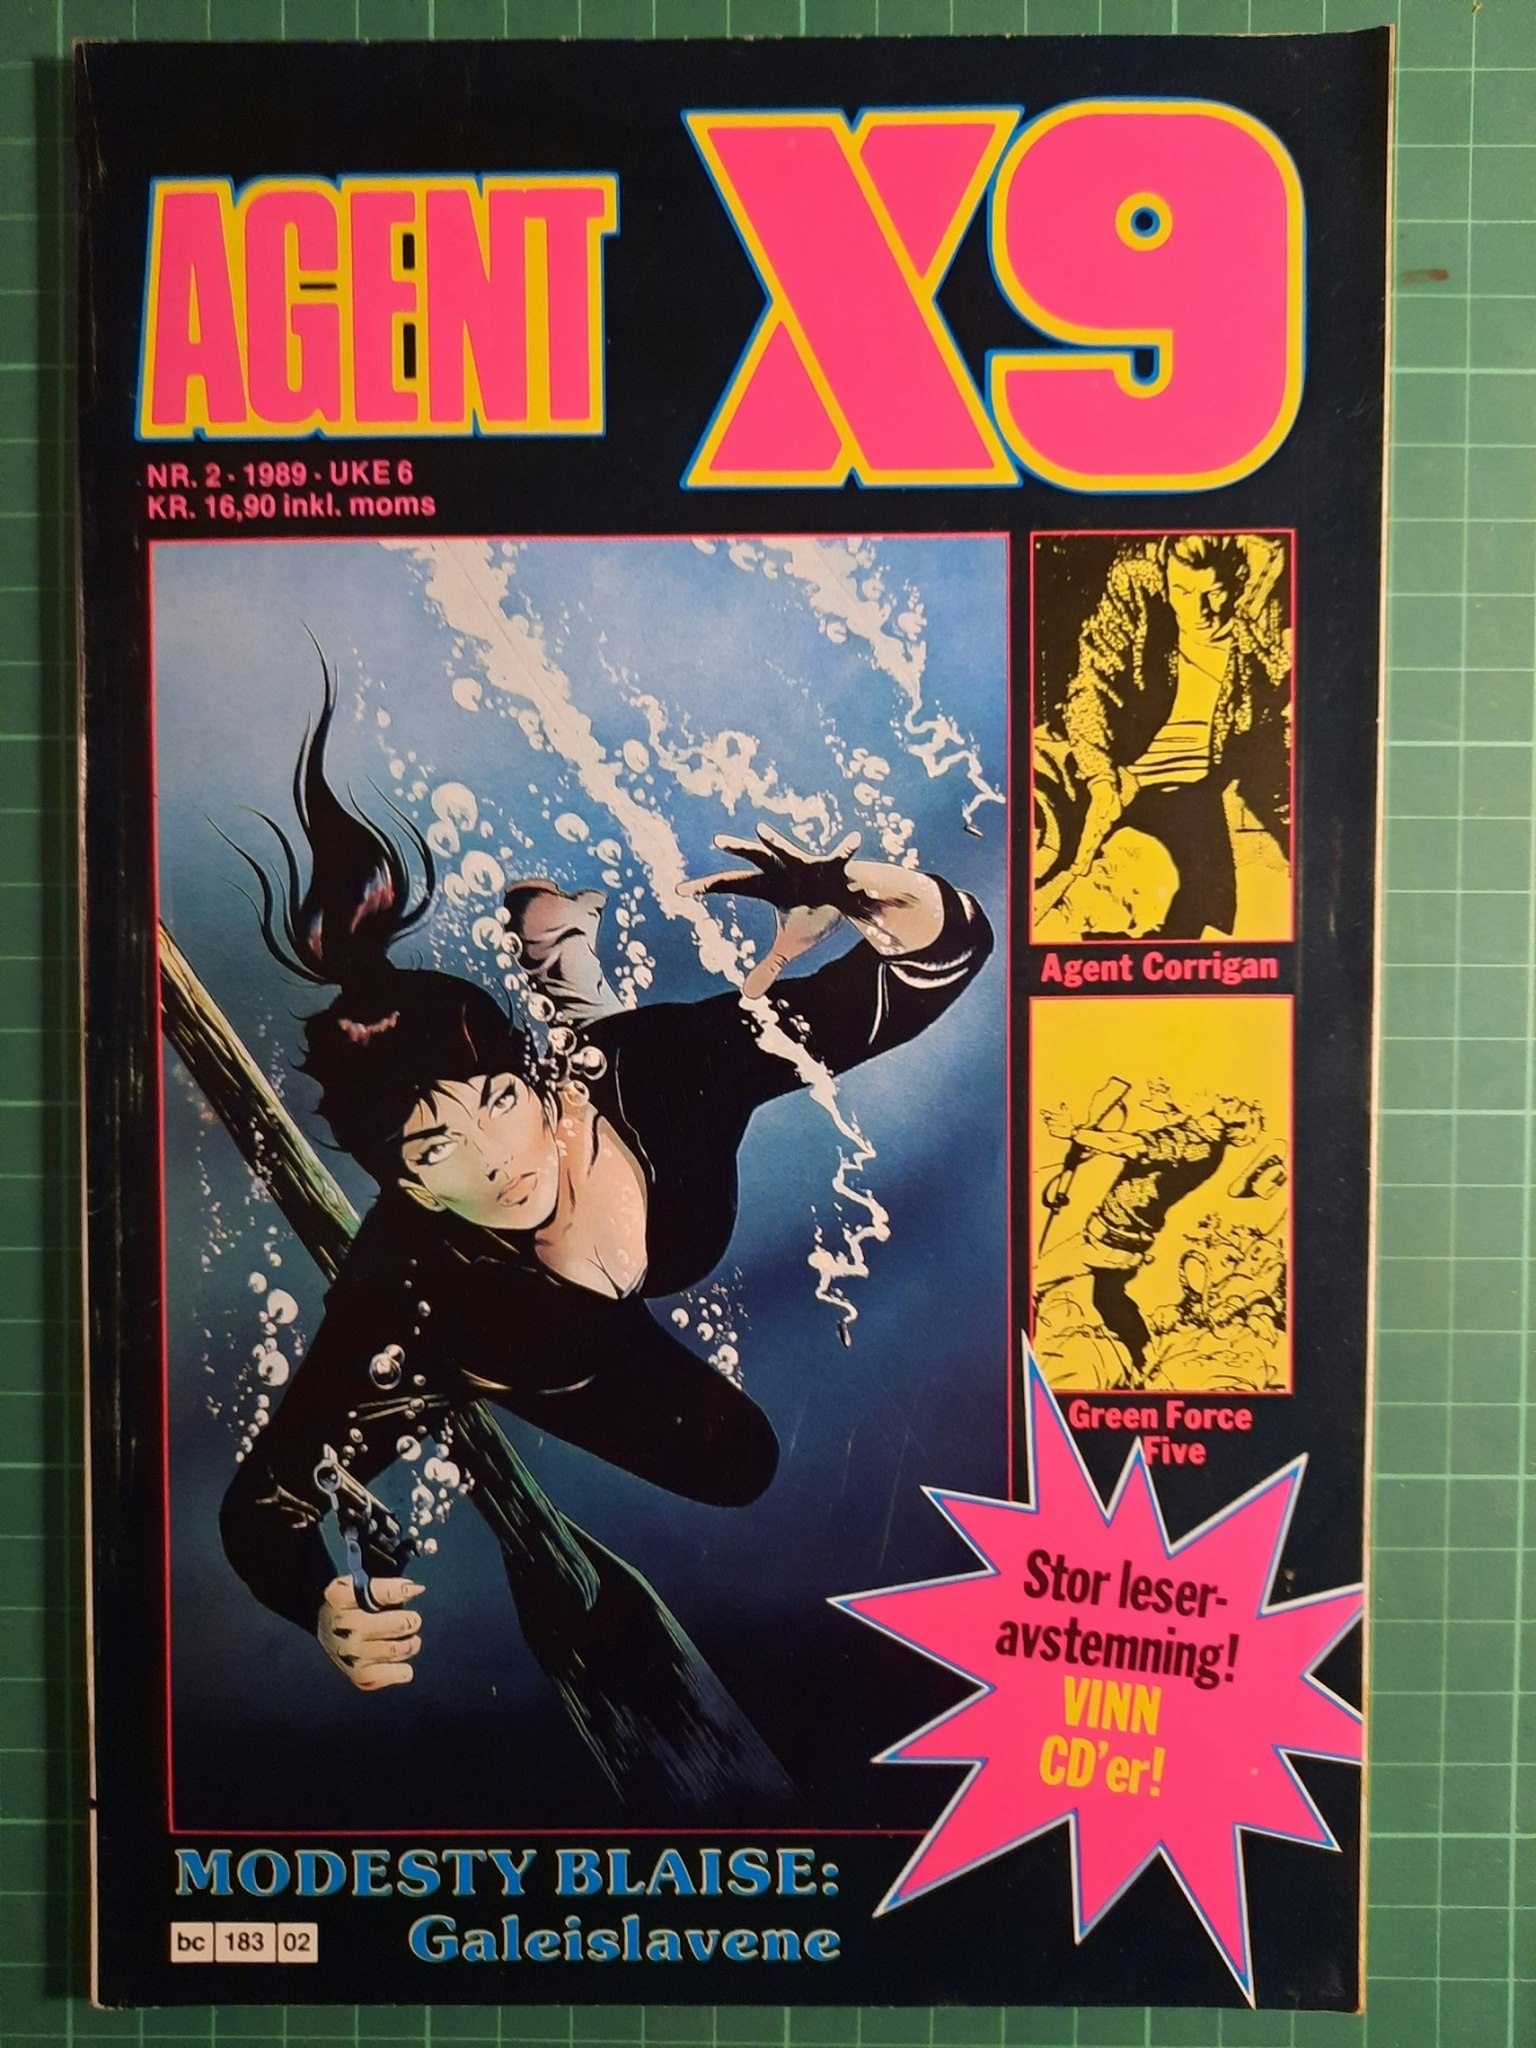 Agent X9 1989 - 02